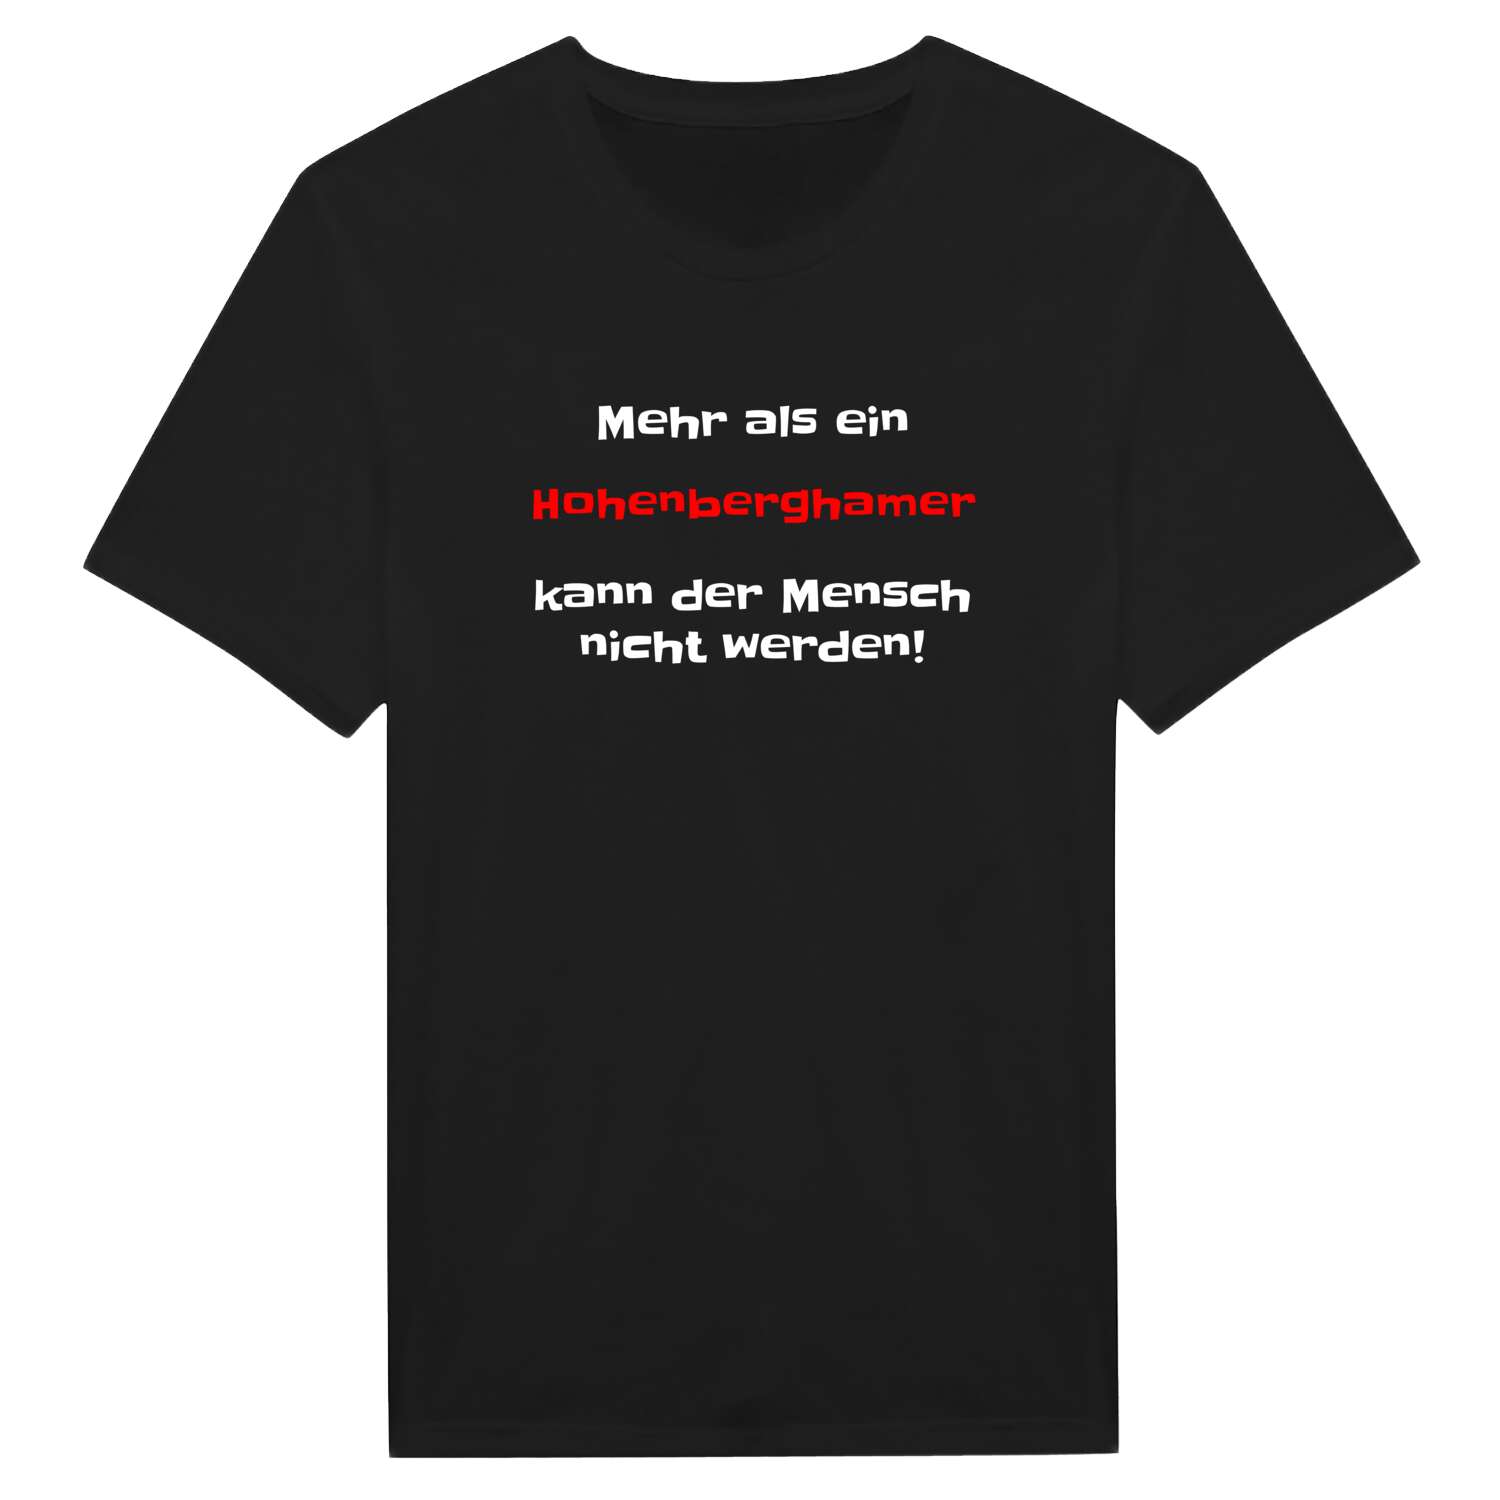 Hohenbergham T-Shirt »Mehr als ein«